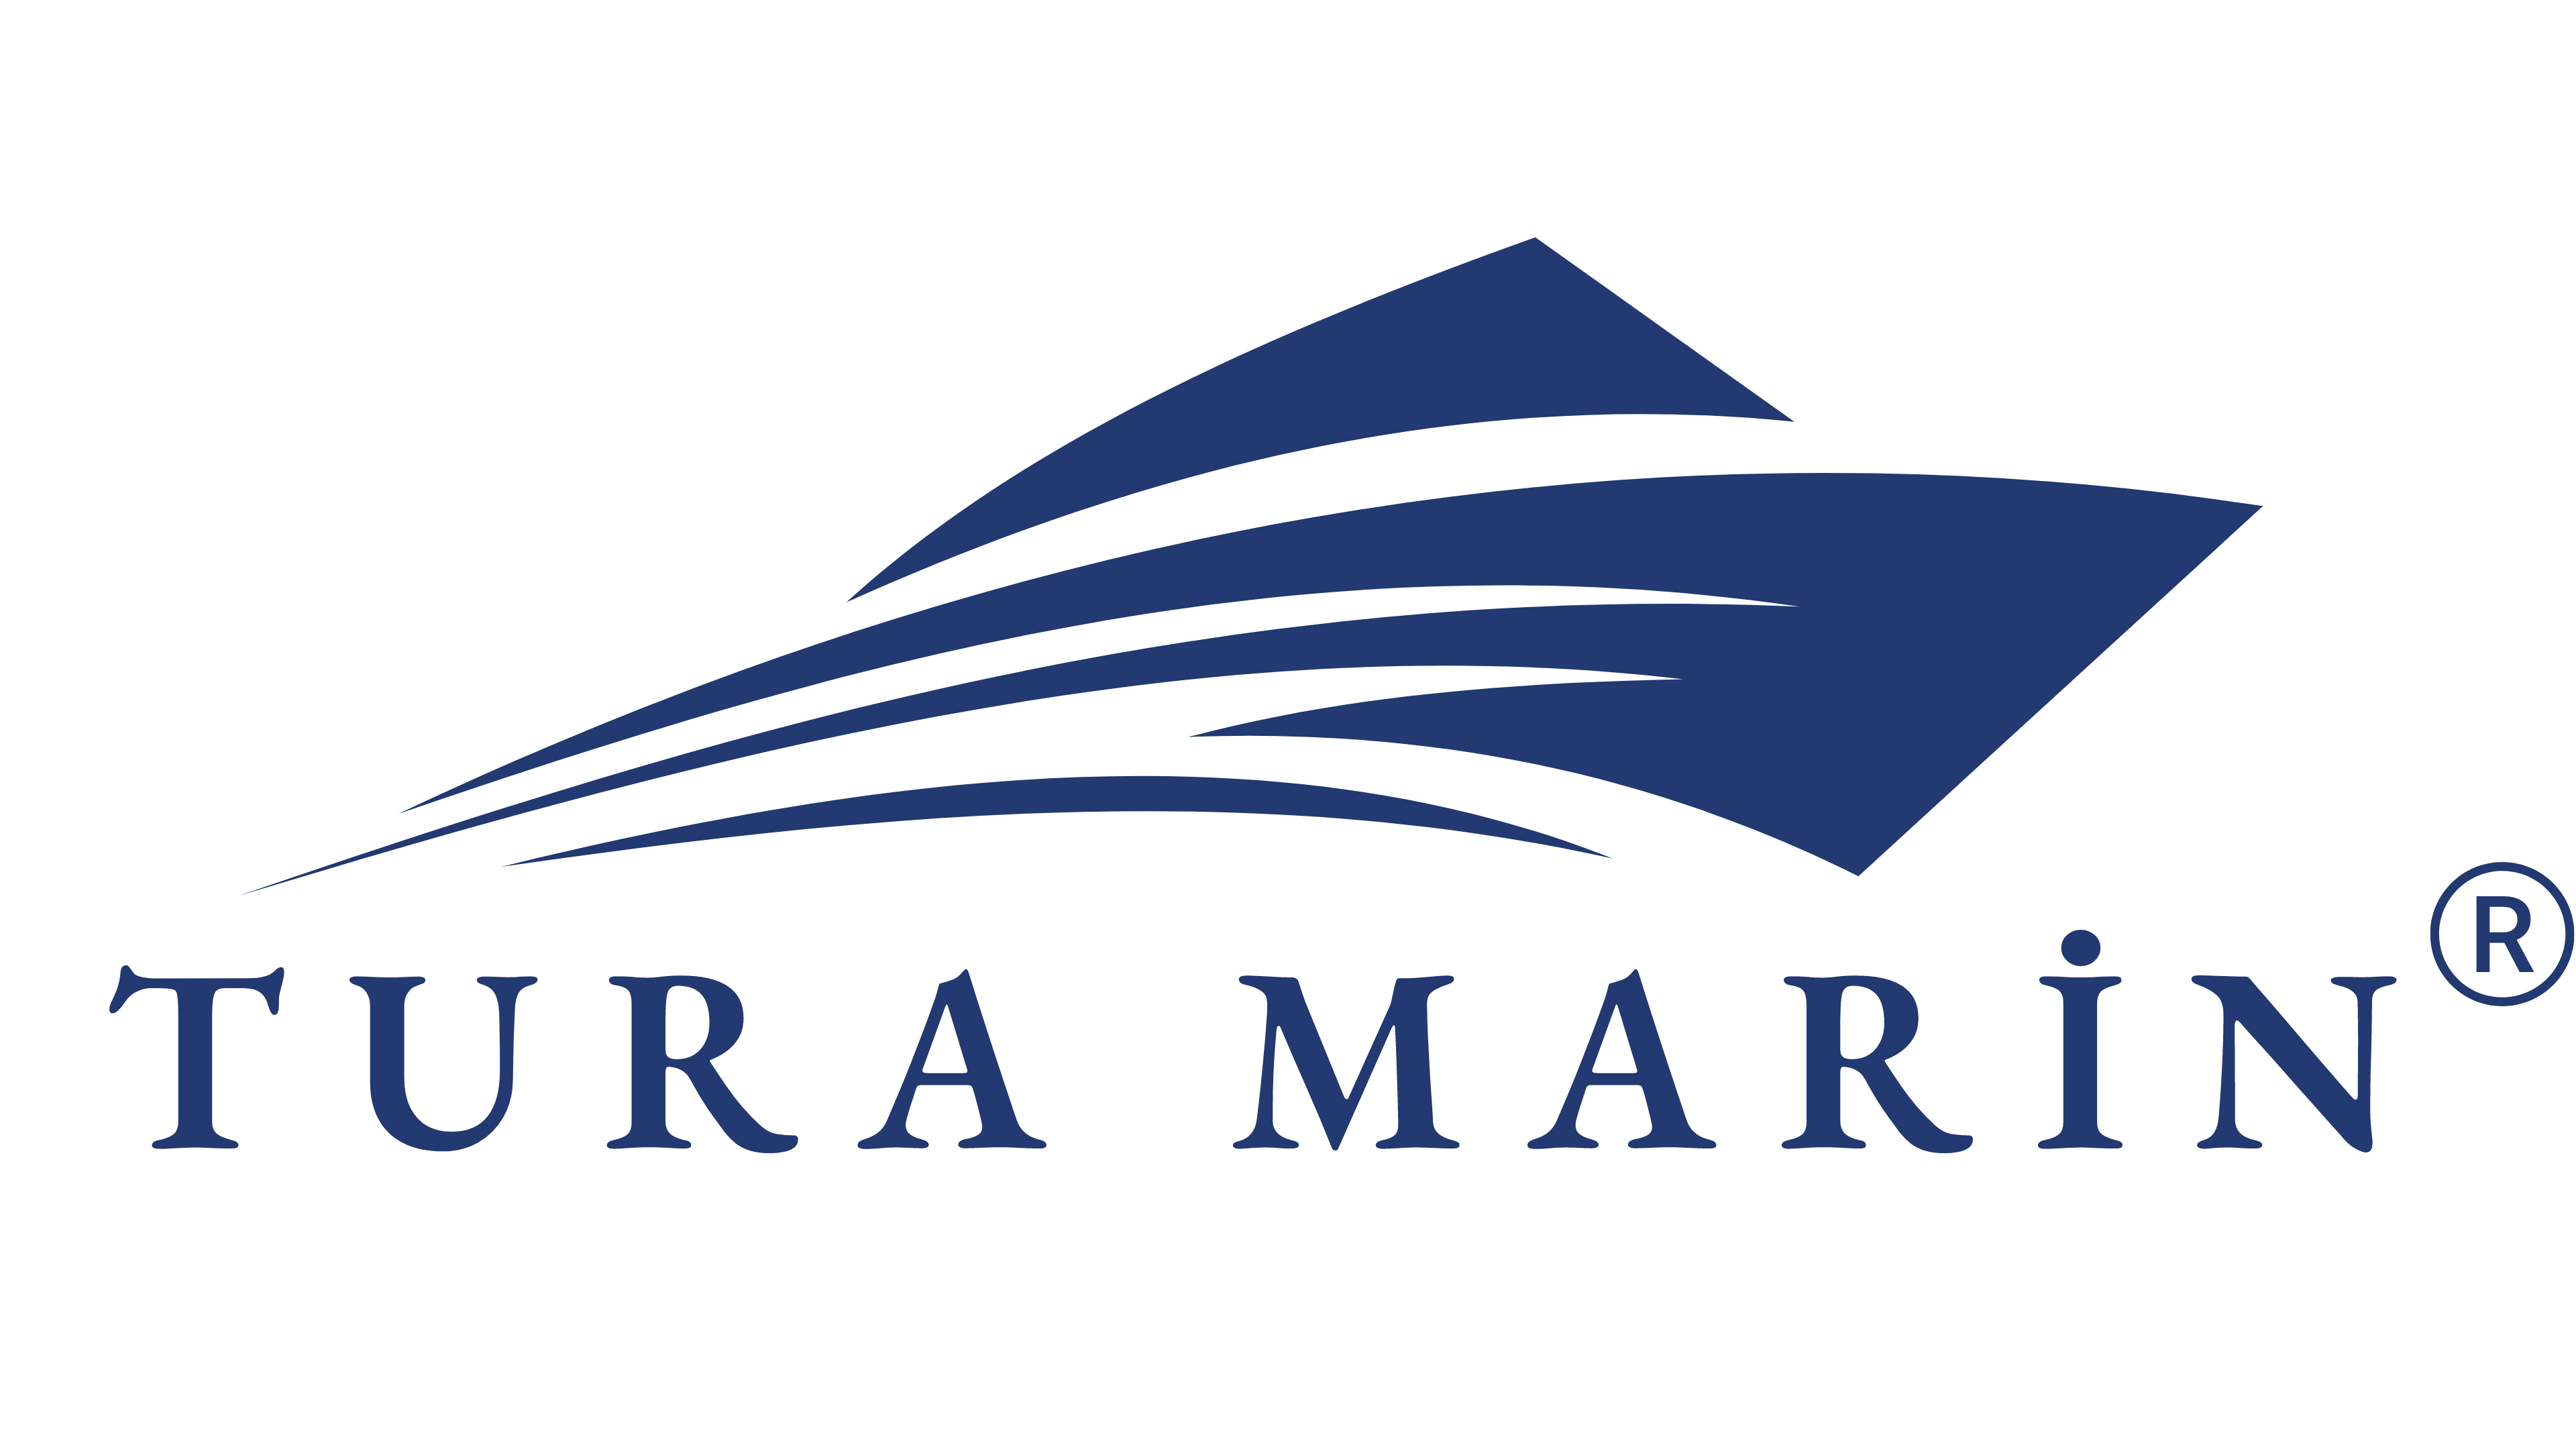 MarinReyon - Tekne, Yat ve Karavan Online Mağaza